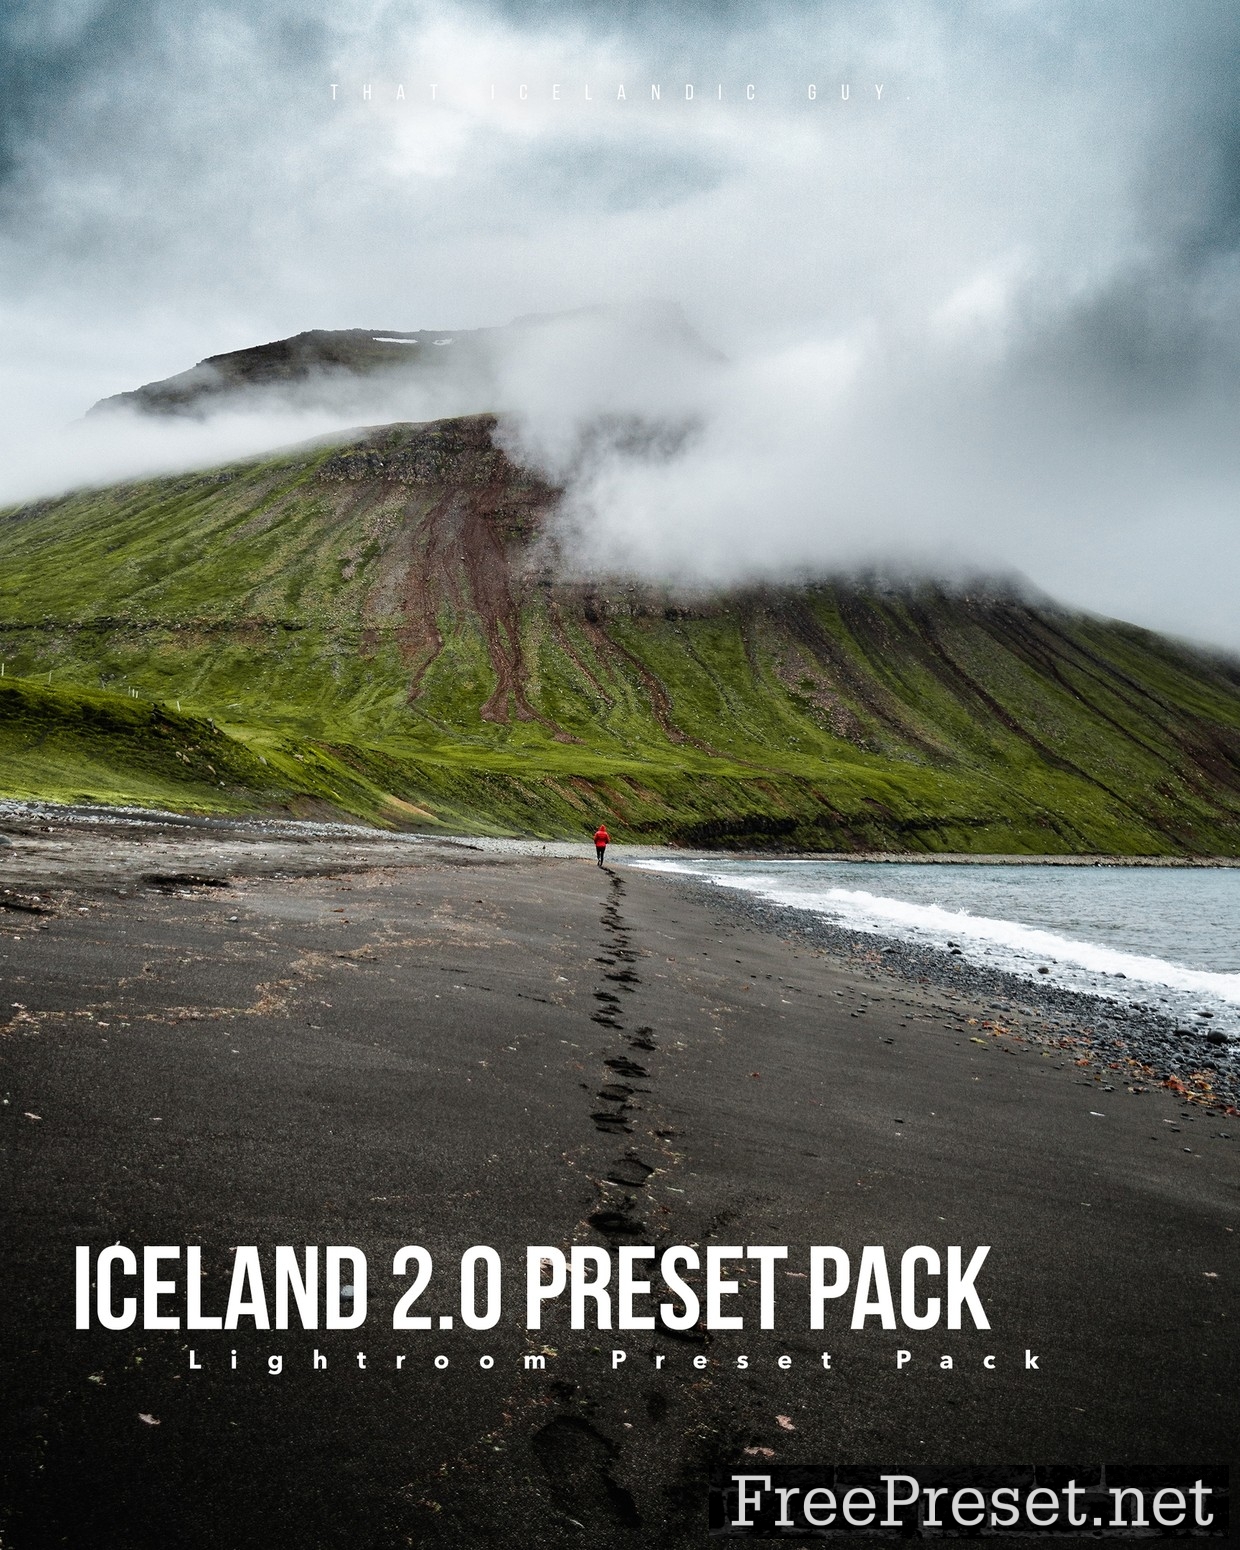 ICELAND 2.0 – Lightroom Preset Pack